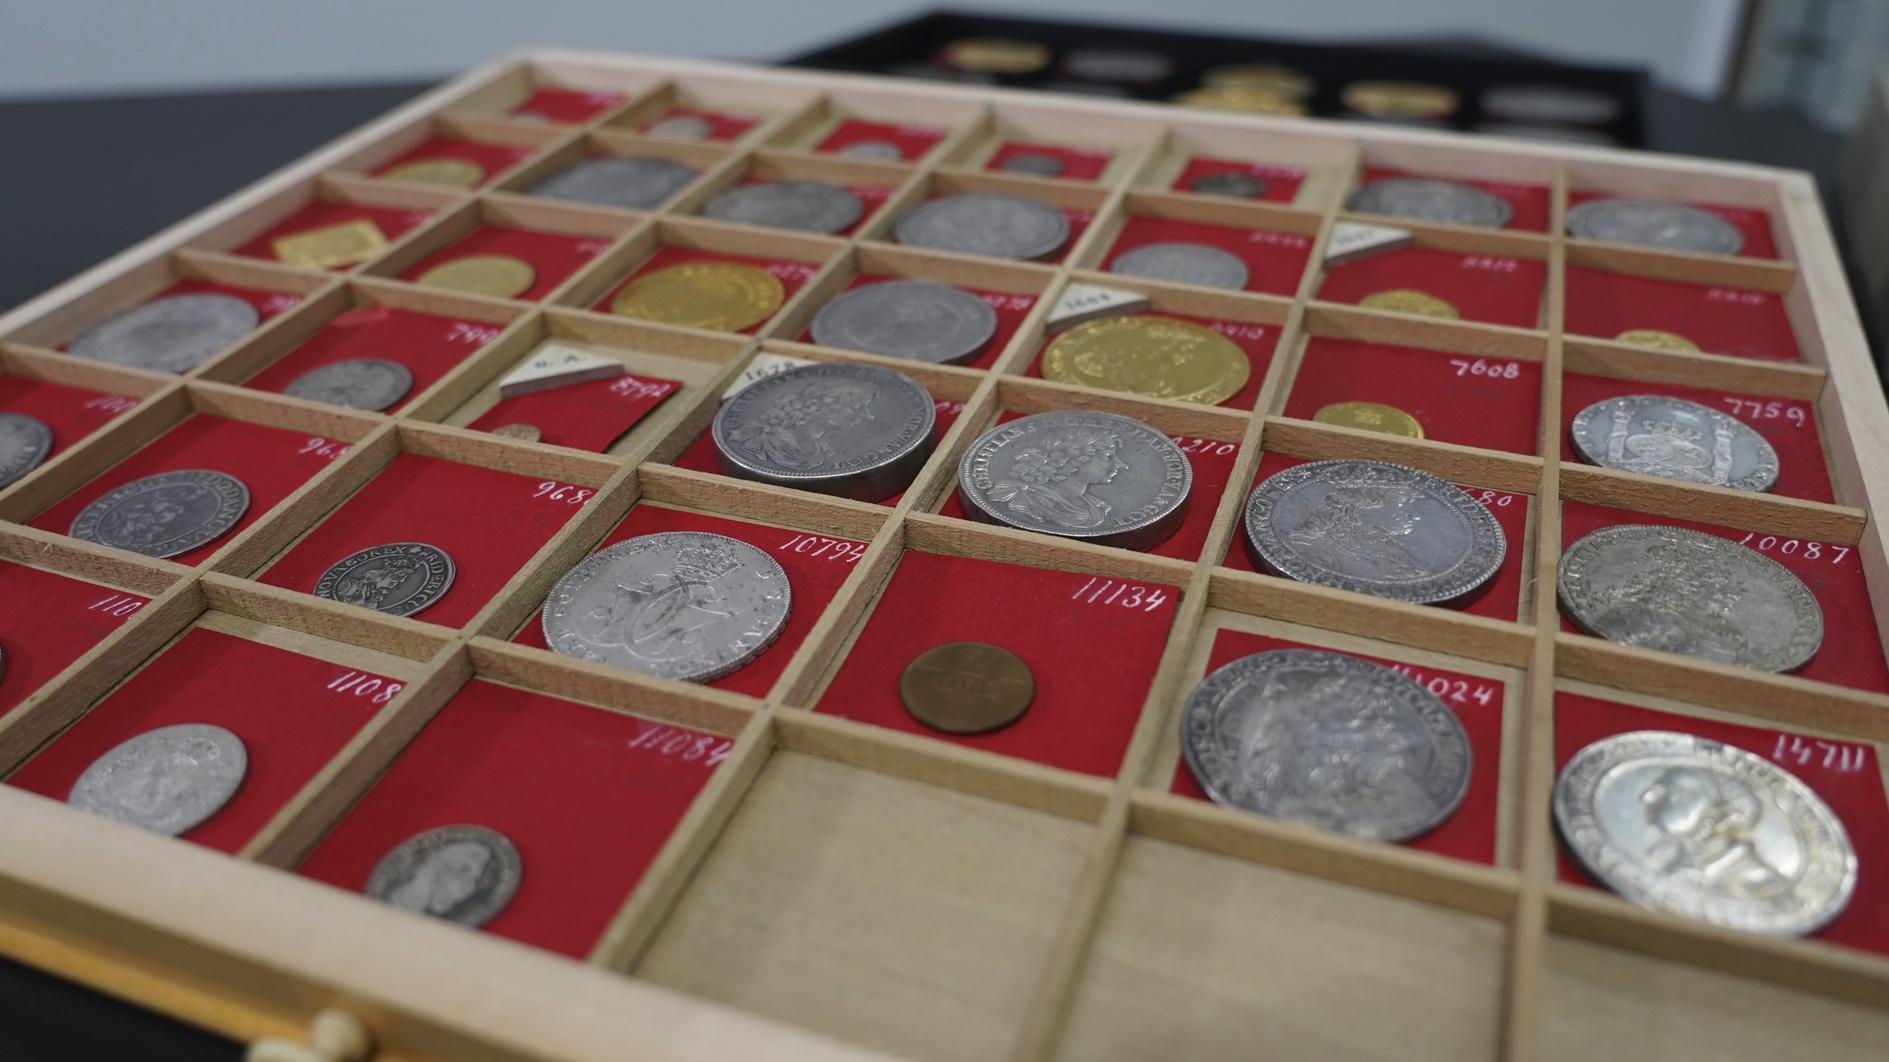 Grote muntencollectie van de Deense magnaat gaat in de verkoop